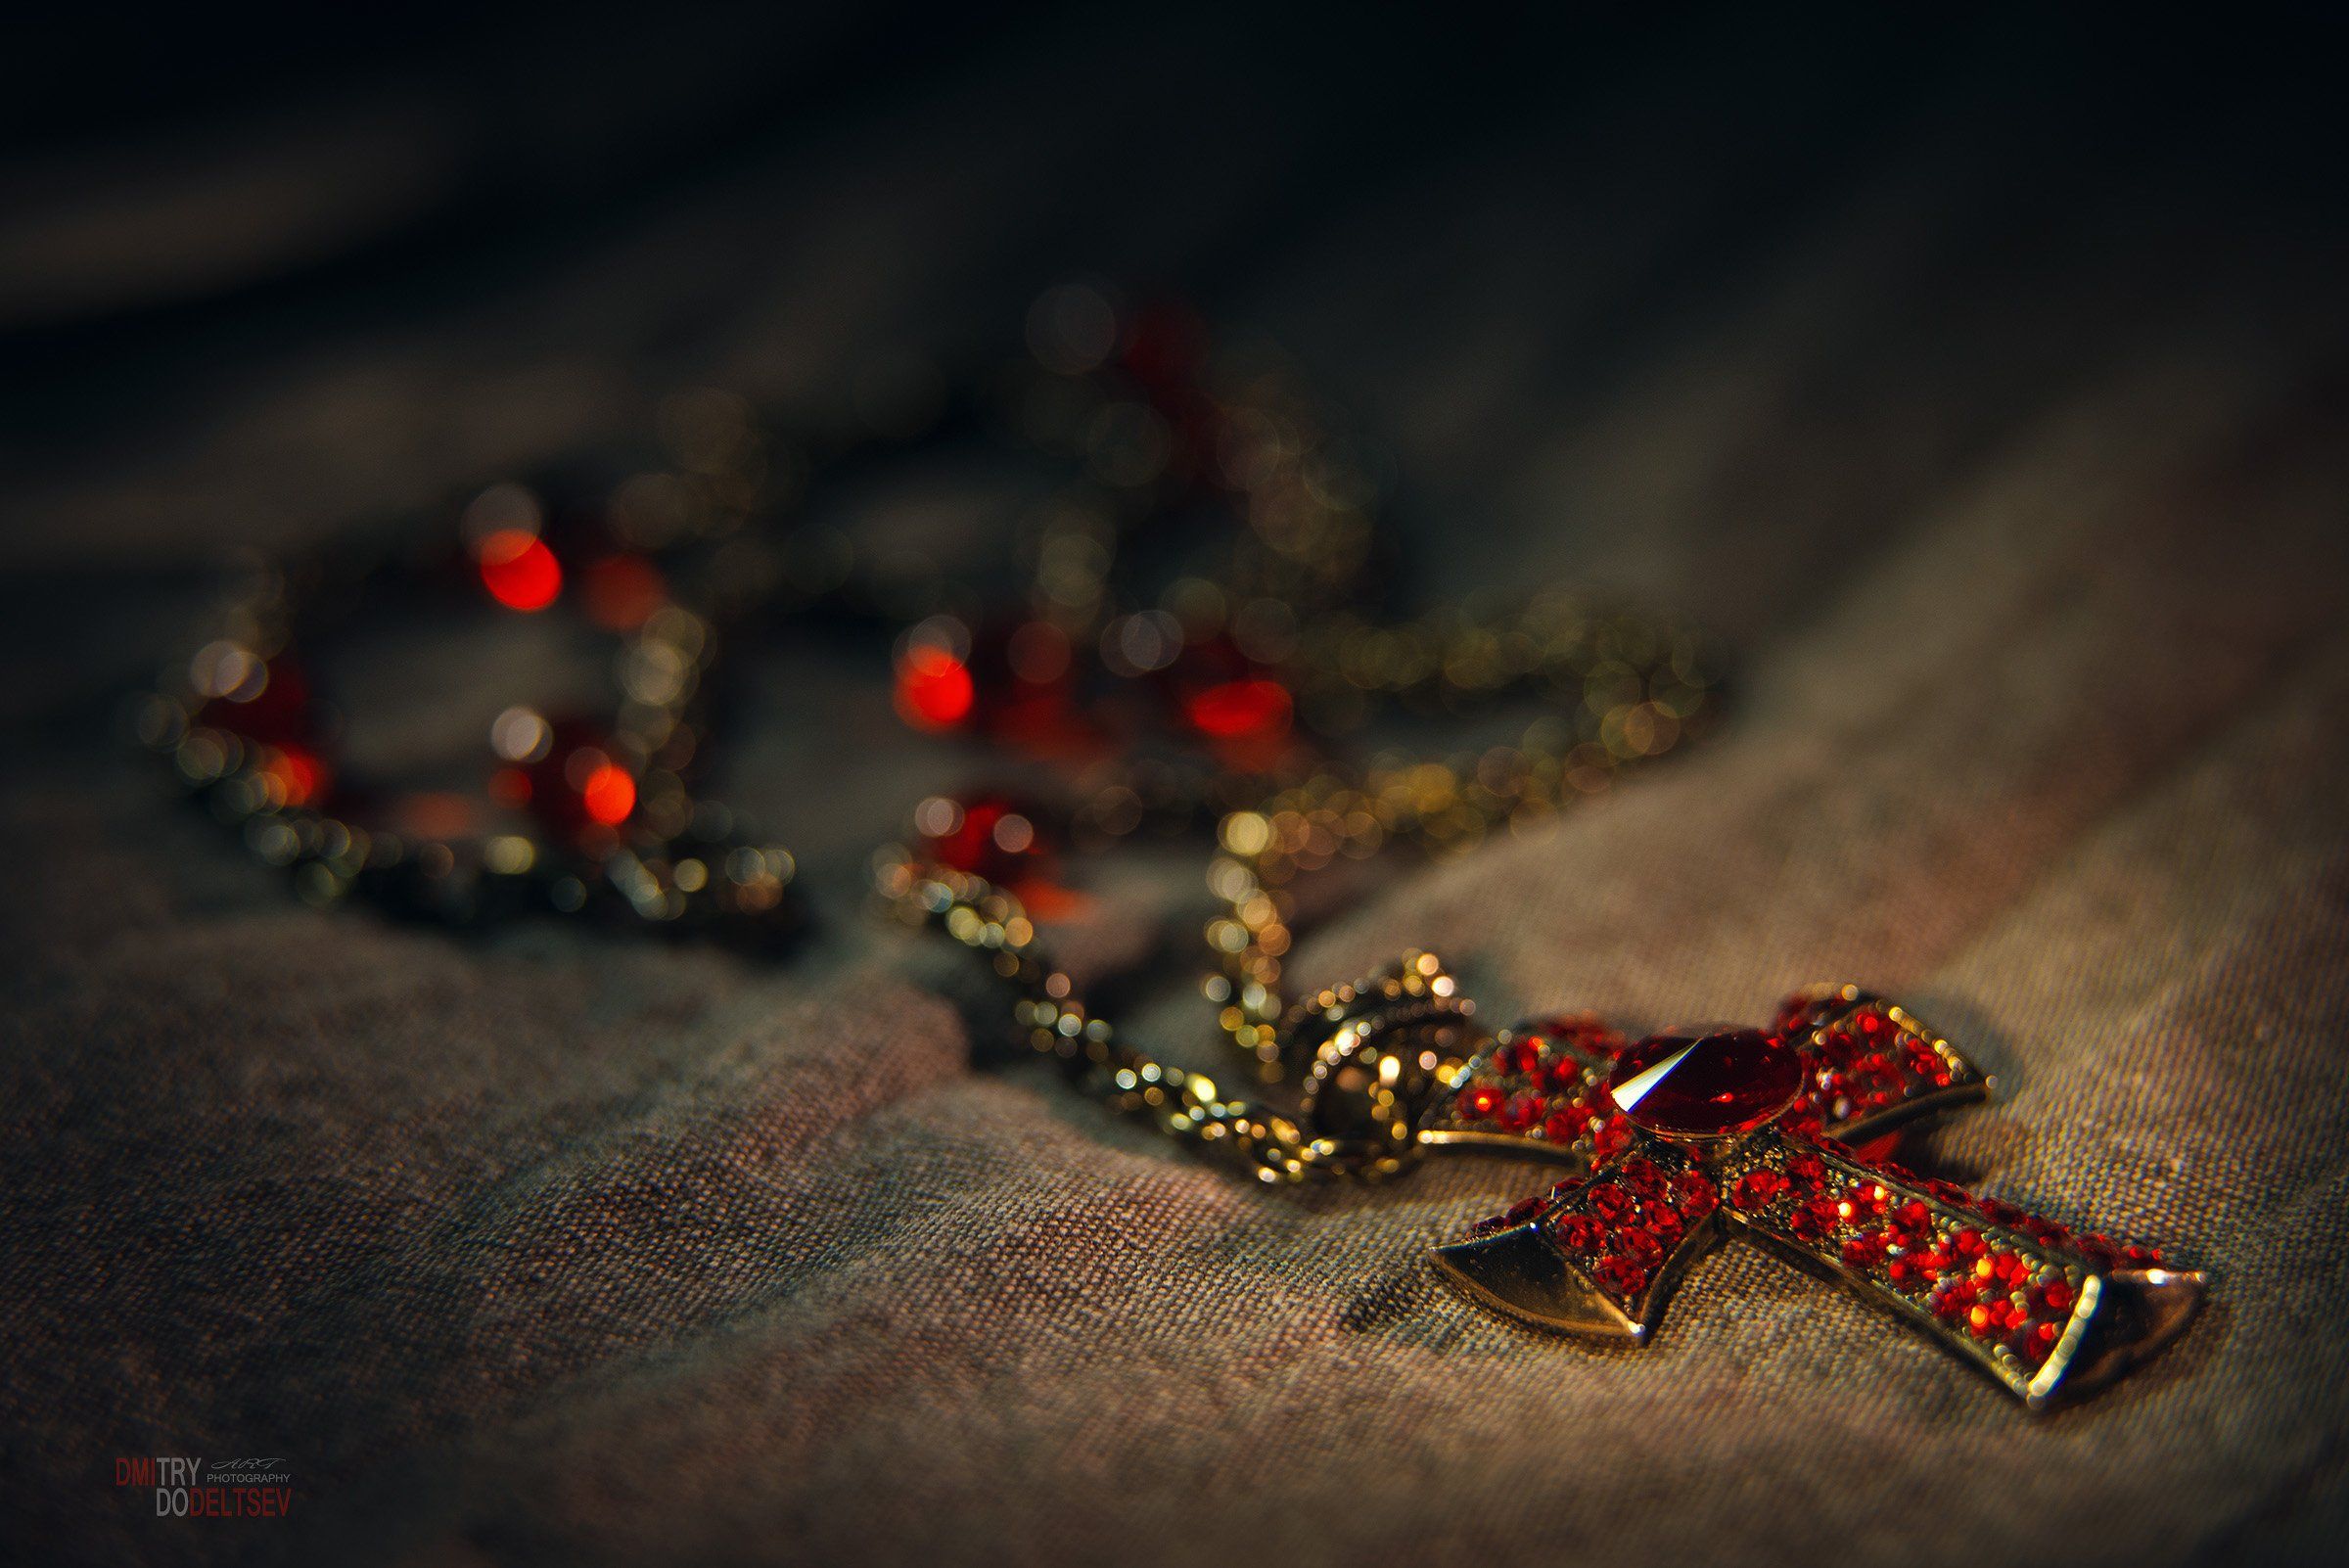 крест, драгоценность, золото, камни, подвеска, цепь, реликвия, Дмитрий Додельцев